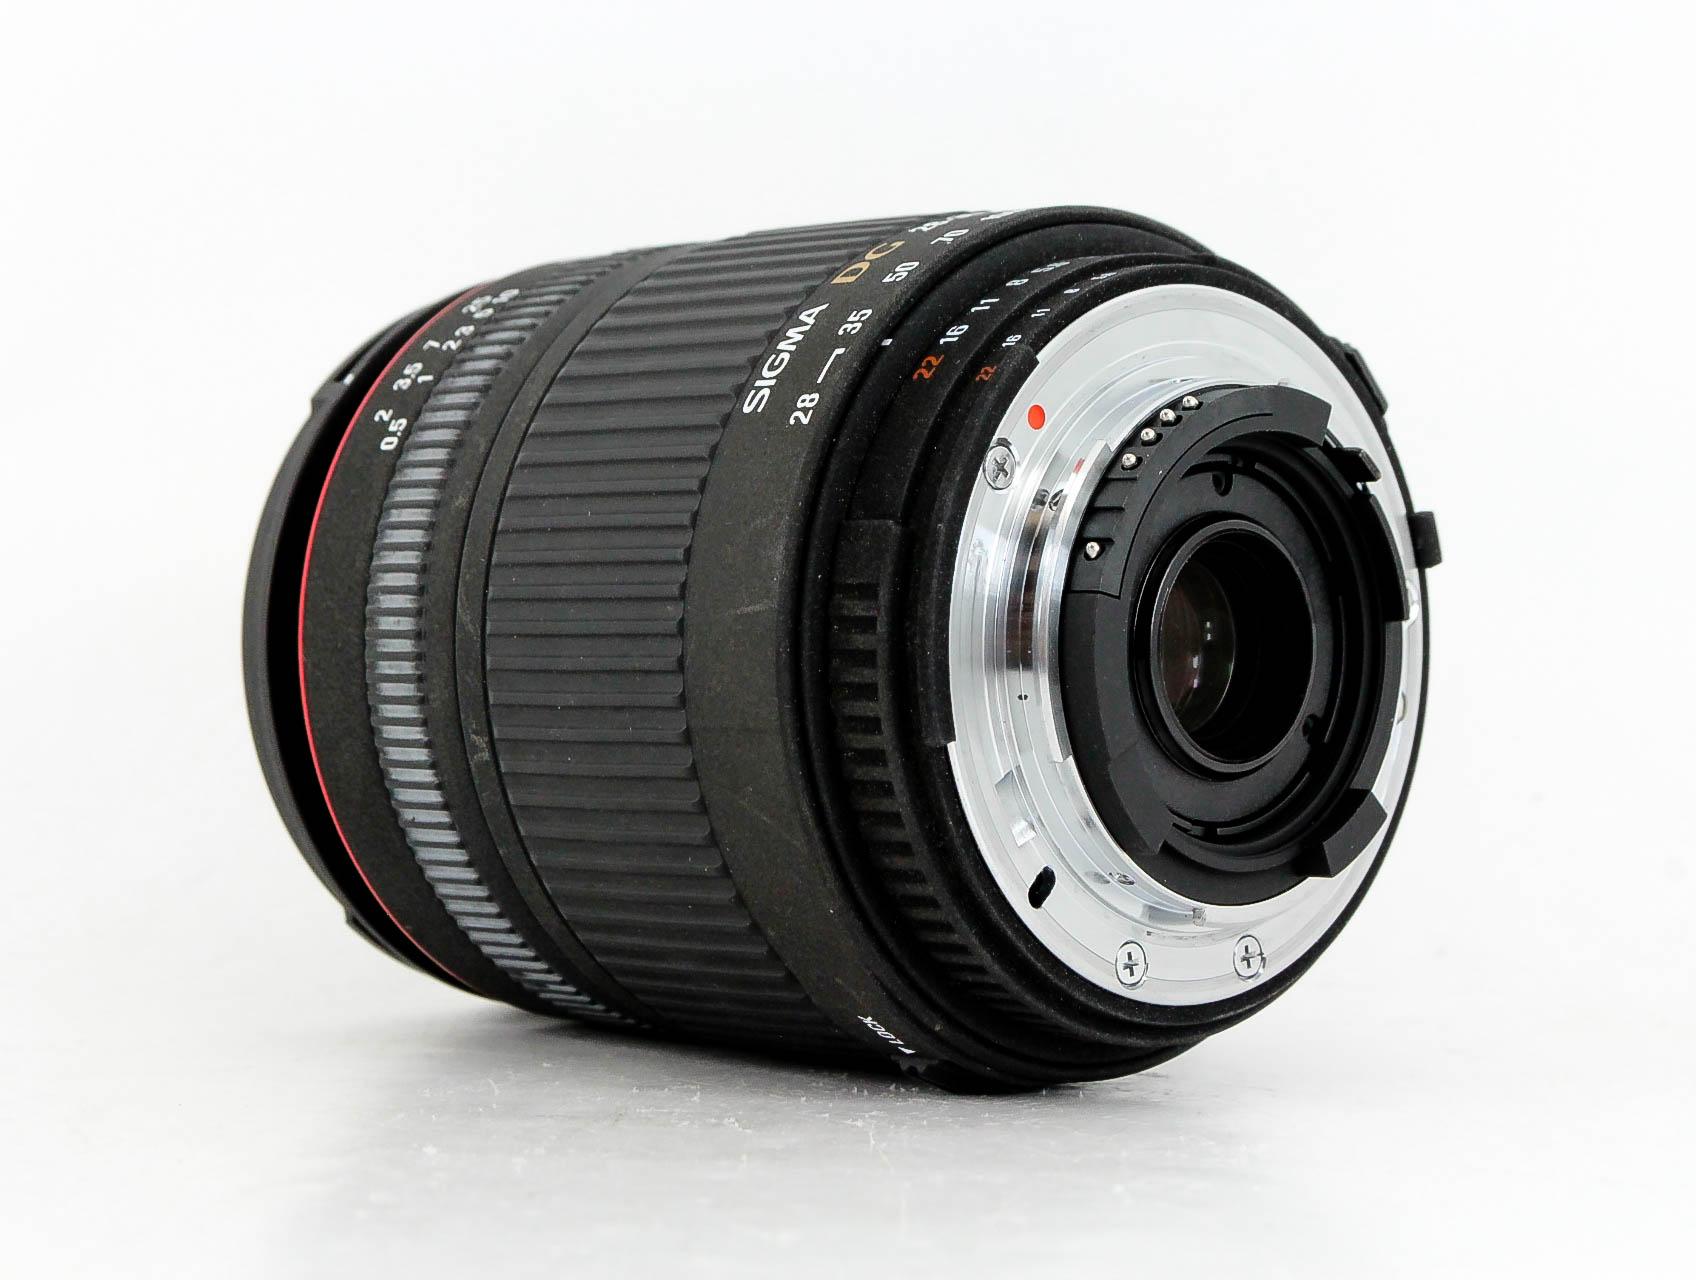 Sigma 28-300mm f/3.5-6.3 AF DG Macro Nikon Fit Lens - Lenses and Cameras